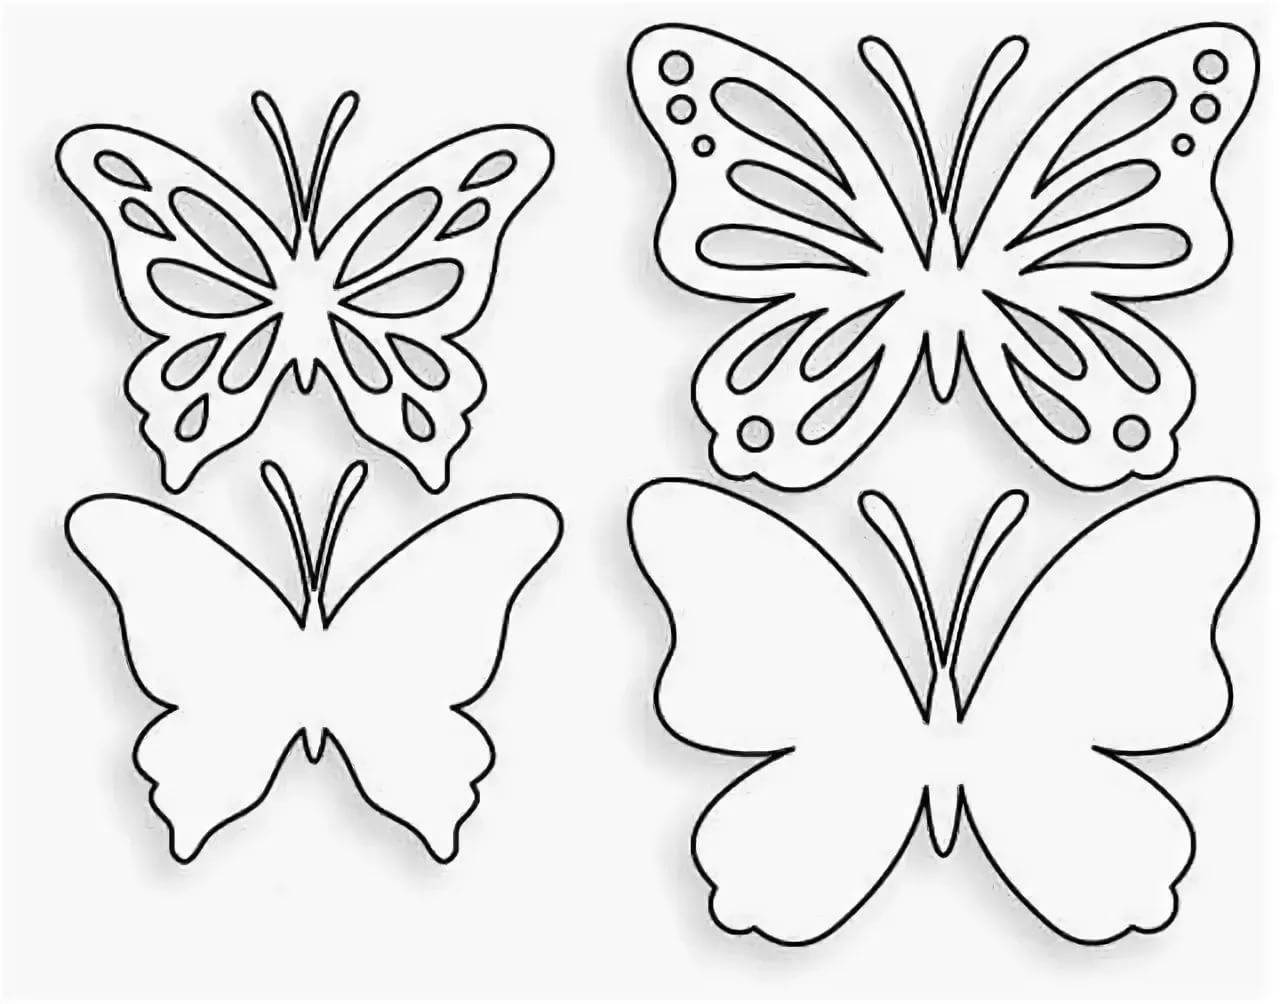 Как из бумаги сделать бабочку своими руками на стену: шаблоны, трафареты для распечатывания и вырезания, фото. как сделать красивую бабочку из бумаги оригами, летающую, снежинку, аппликацию, панно, ажурную для украшения интерьера?